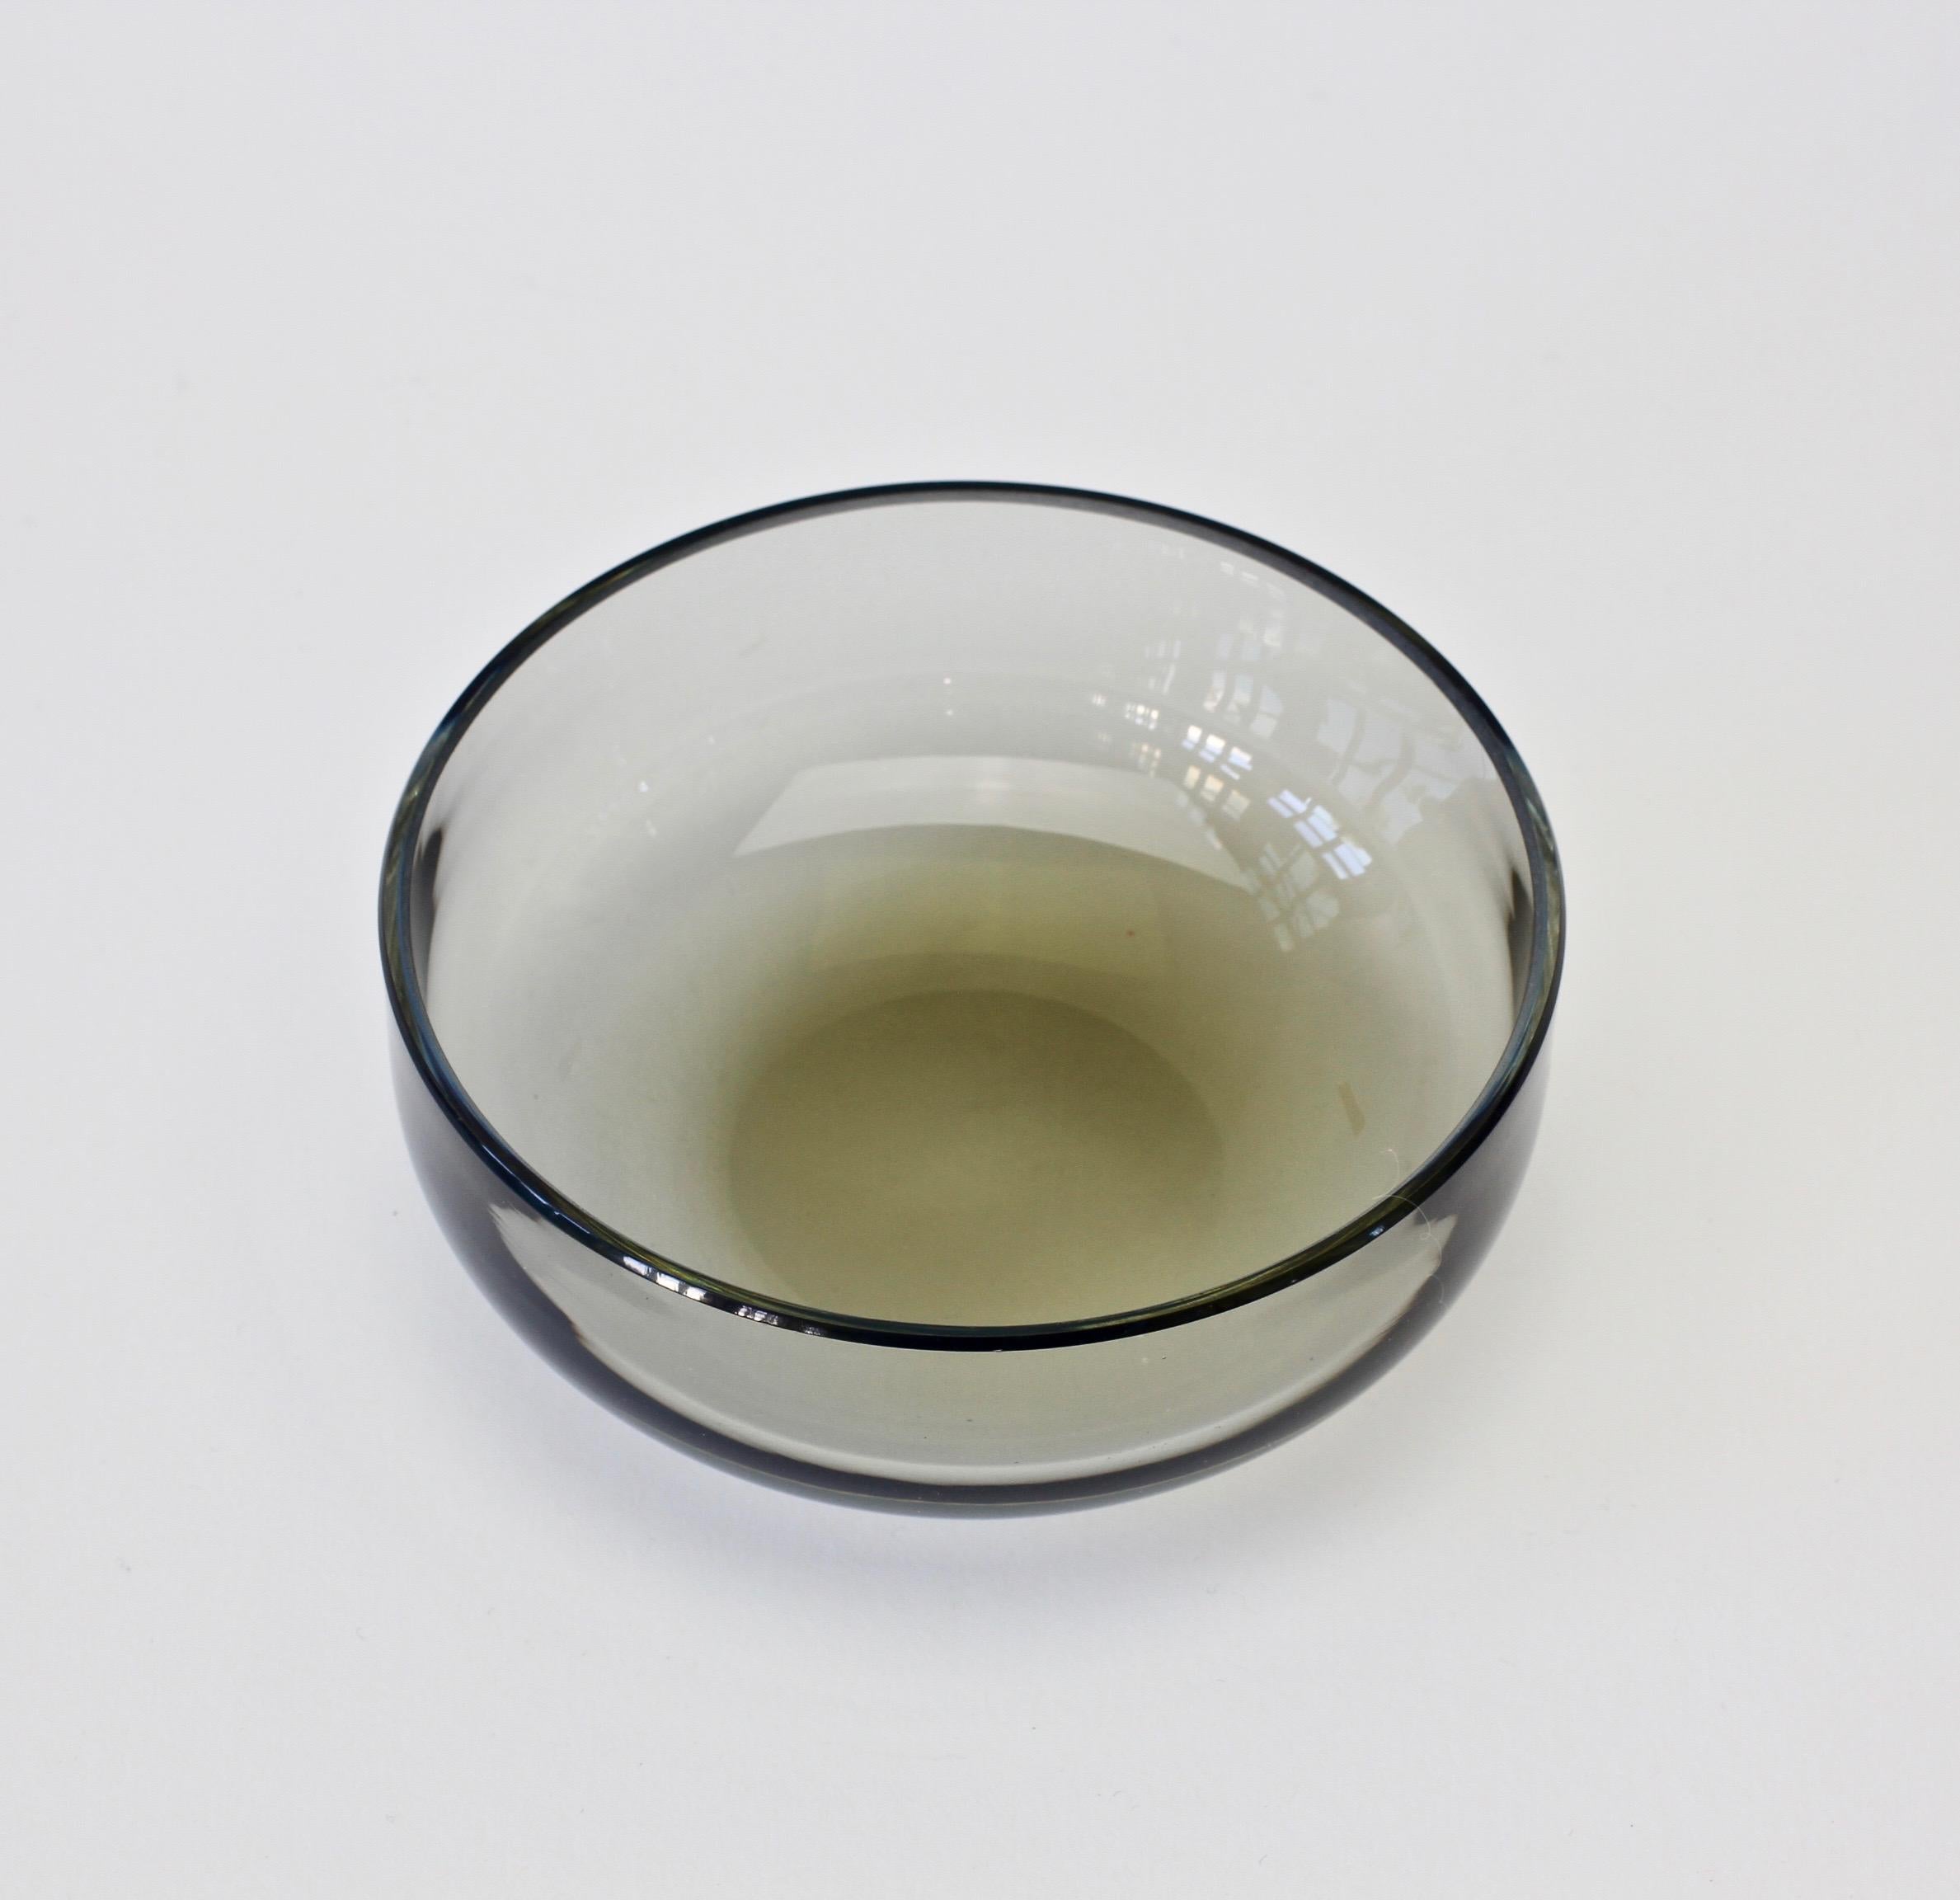 Einzelne Muranoglasschale aus der Mitte des Jahrhunderts, entworfen von Antonio da Ros (1936-2012) für Cenedese, um 1970-1990. Wunderschöne durchscheinende Farbe von rauchgrauem (grau) getöntem Glas. Schlichte, aber elegante Form - fast